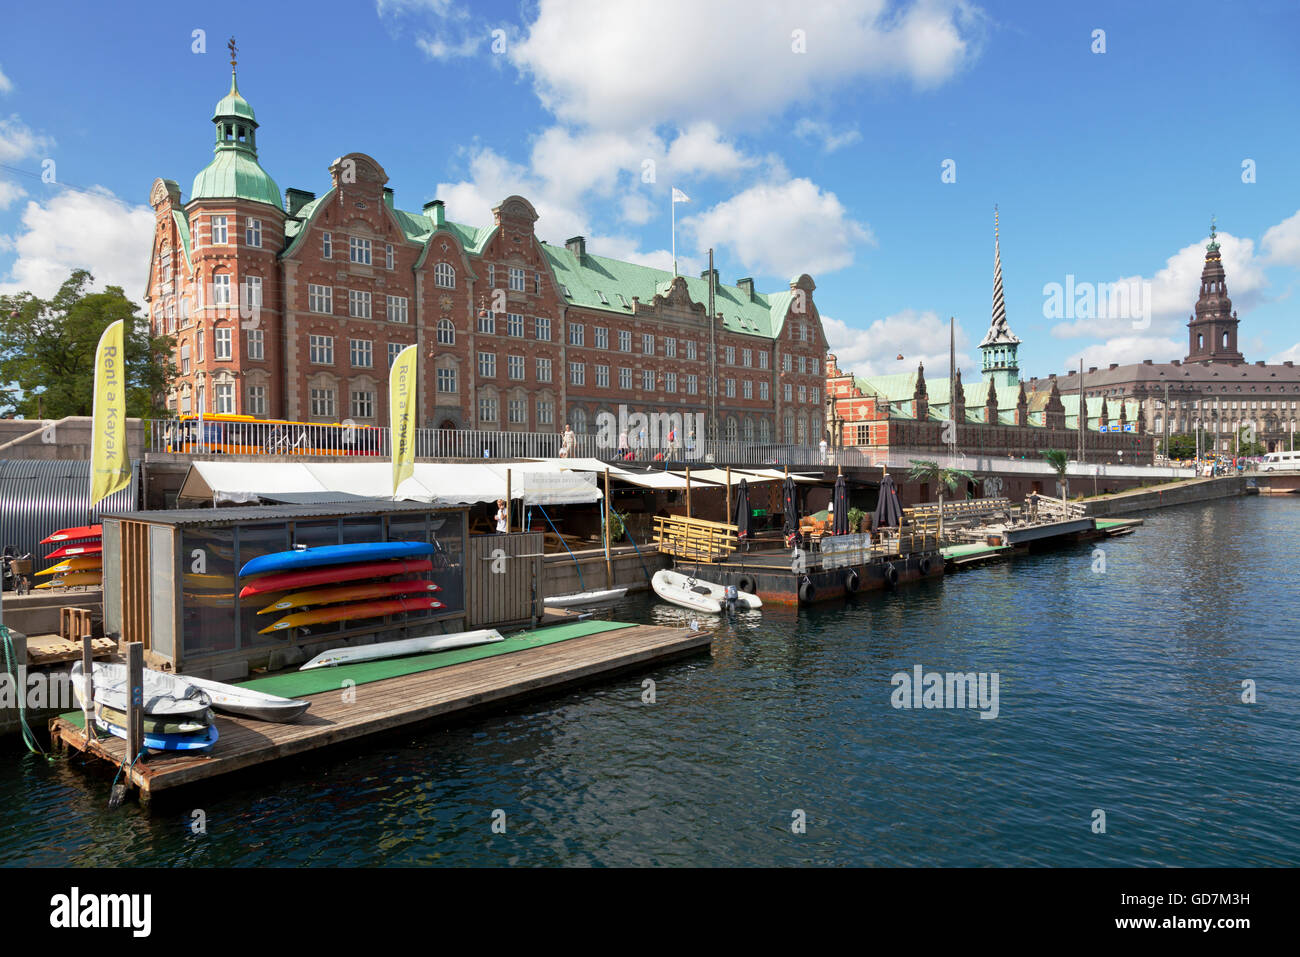 República de kayak en el puerto interior en el centro de Copenhague,  alquiler de canoas y Waterside cafe y bar con playa flotante y canal tours  en kayak Fotografía de stock -